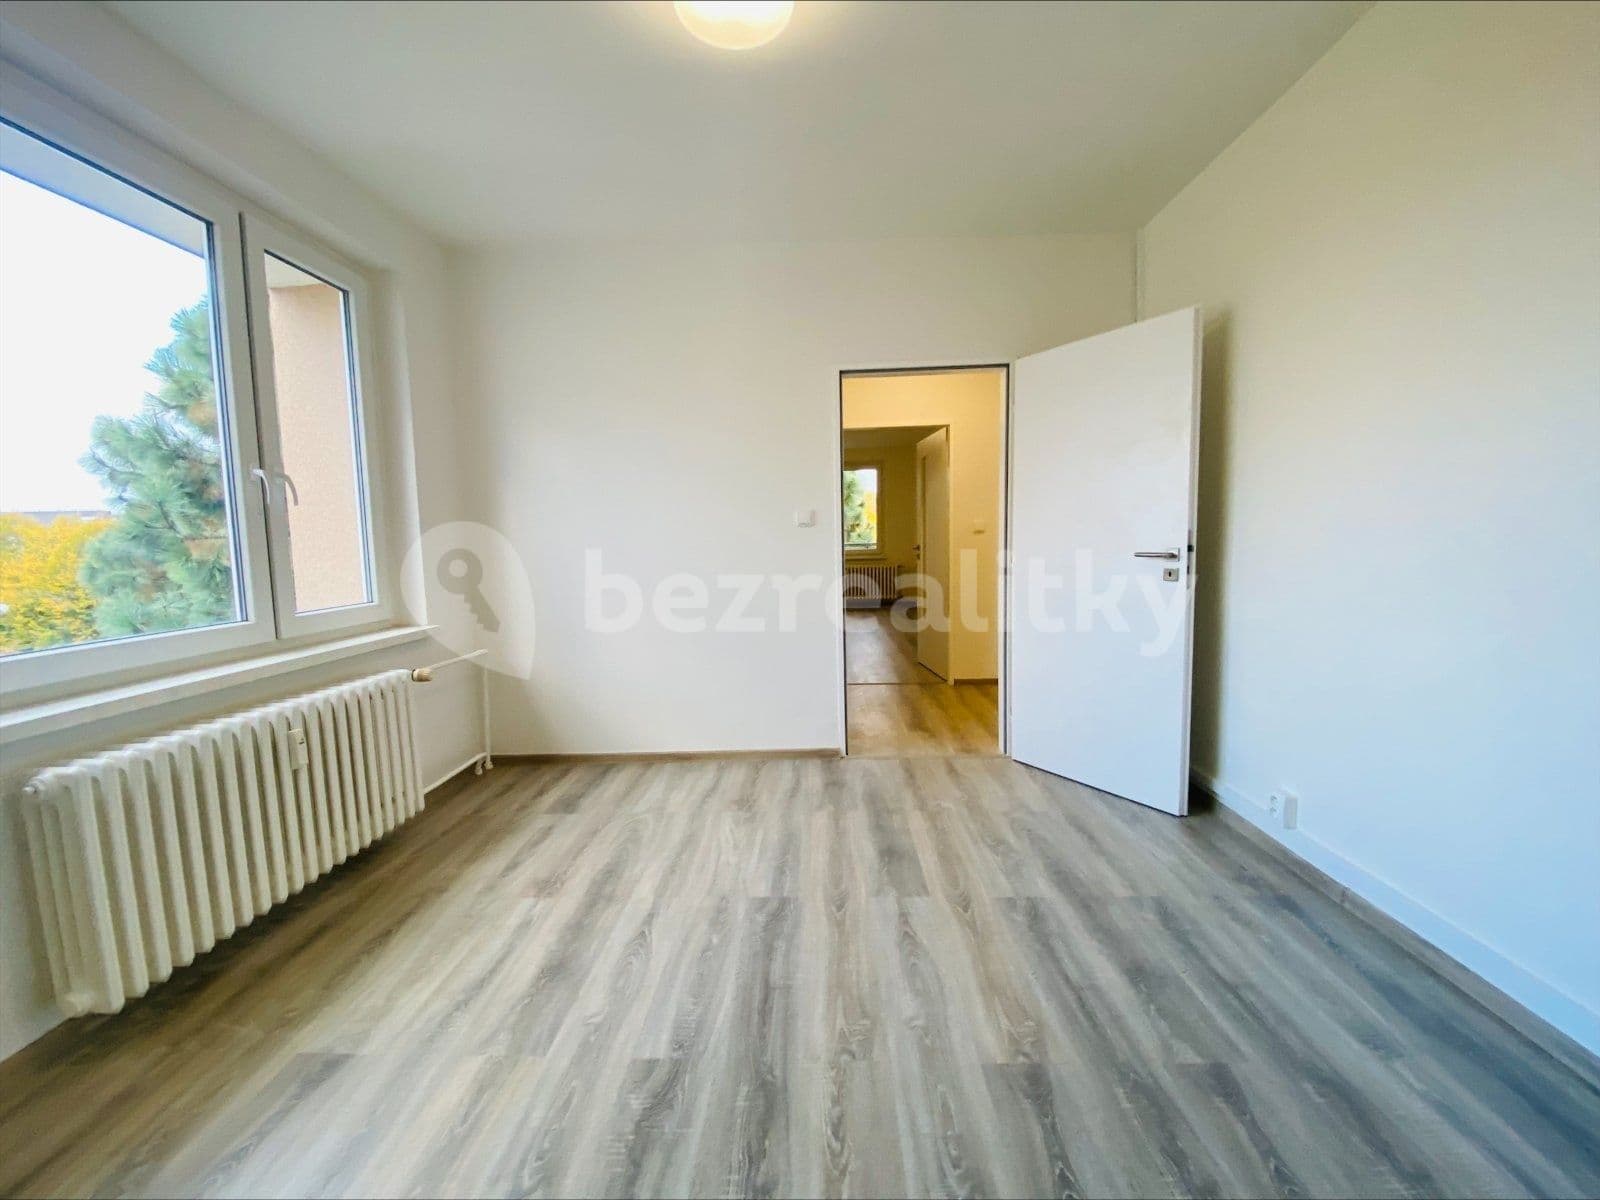 2 bedroom flat to rent, 50 m², Mojmírovců, Ostrava, Moravskoslezský Region